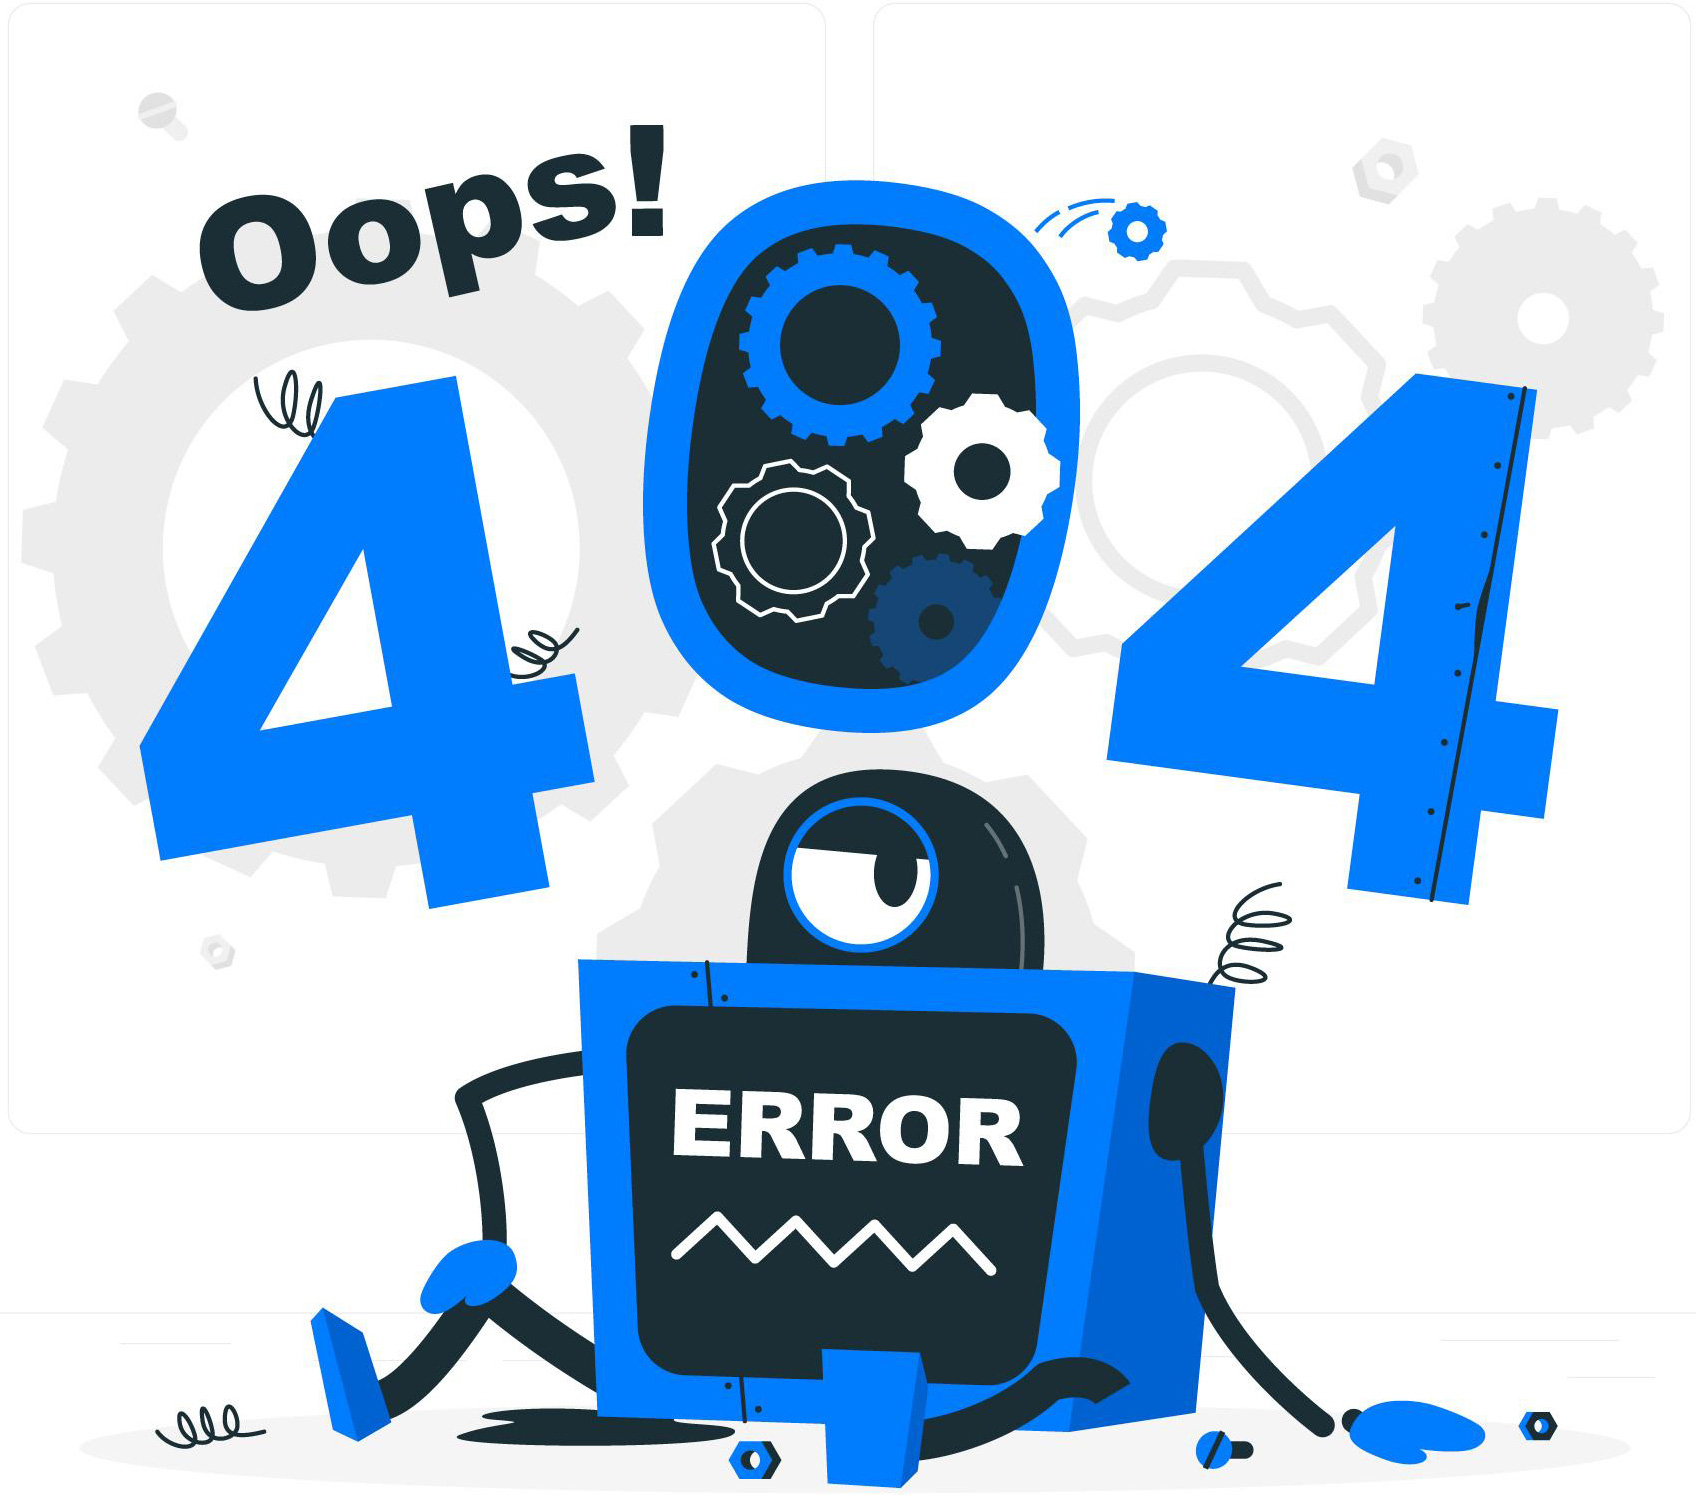 خطای 404
